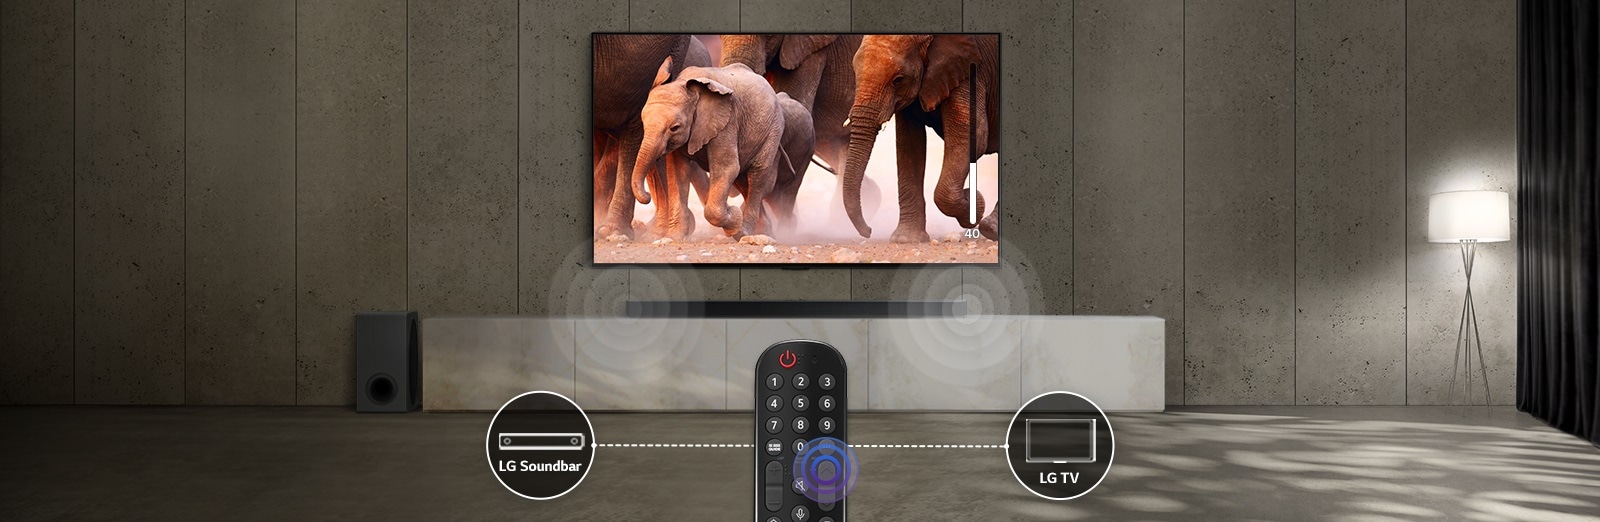 Un TV en una habitación con luces sutiles muestra imágenes de elefantes que pasan. Y, en la barra de sonido de debajo del TV, hay un efecto de sonido. En la parte inferior de la imagen, hay un mando a distancia de un TV, y los iconos de la barra de sonido y del TV están conectadosde izquierda a derecha del mando a distancia.